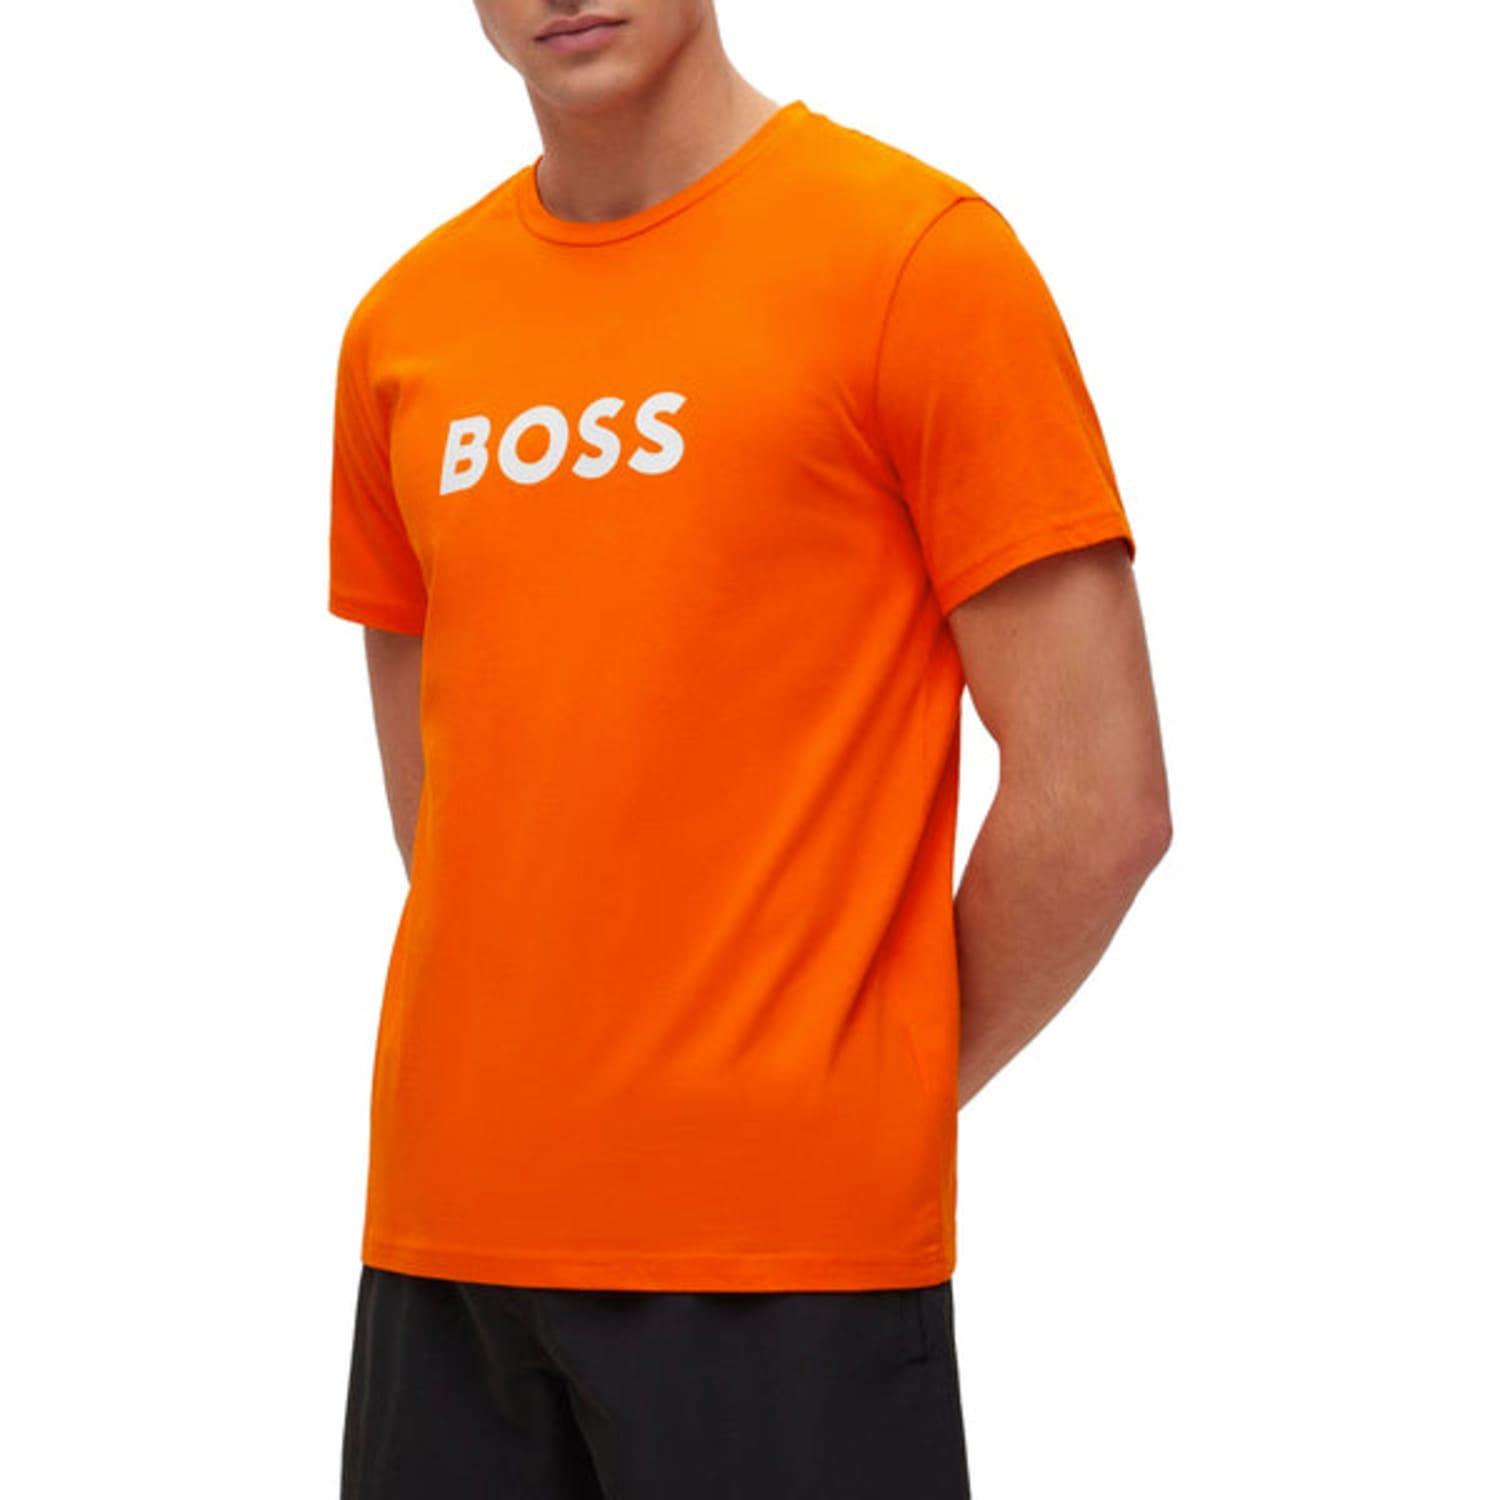 BOSS by HUGO BOSS Rn Orange T-shirt Lyst for Men in 